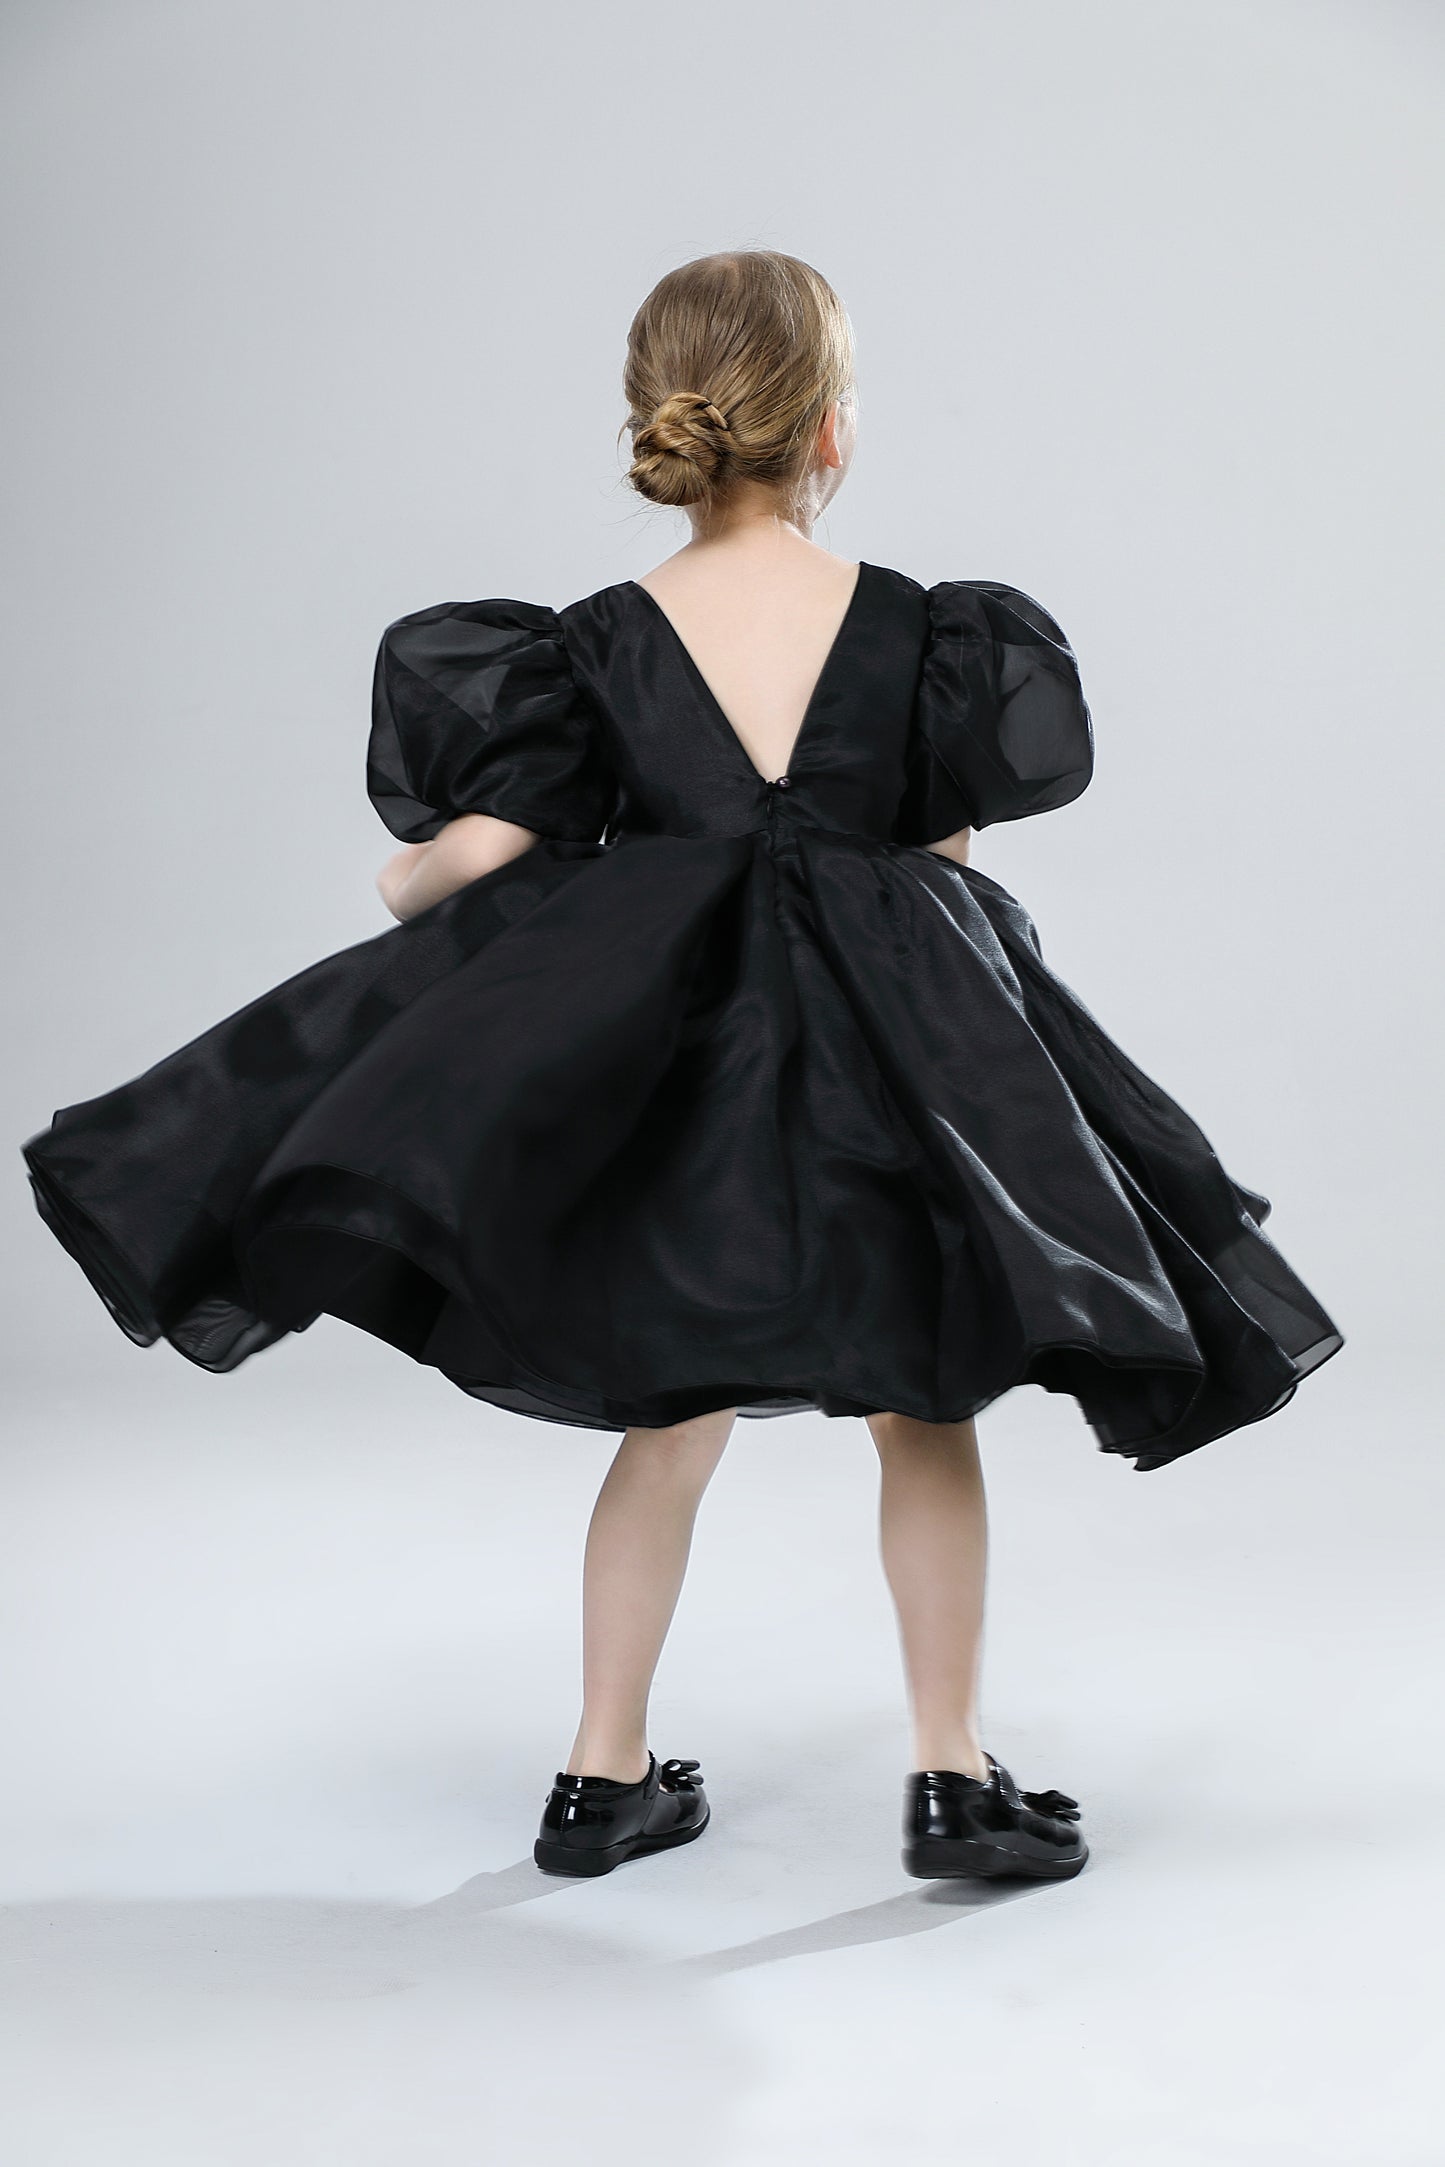 Elegant Floral Print Dress for Girls - Black.